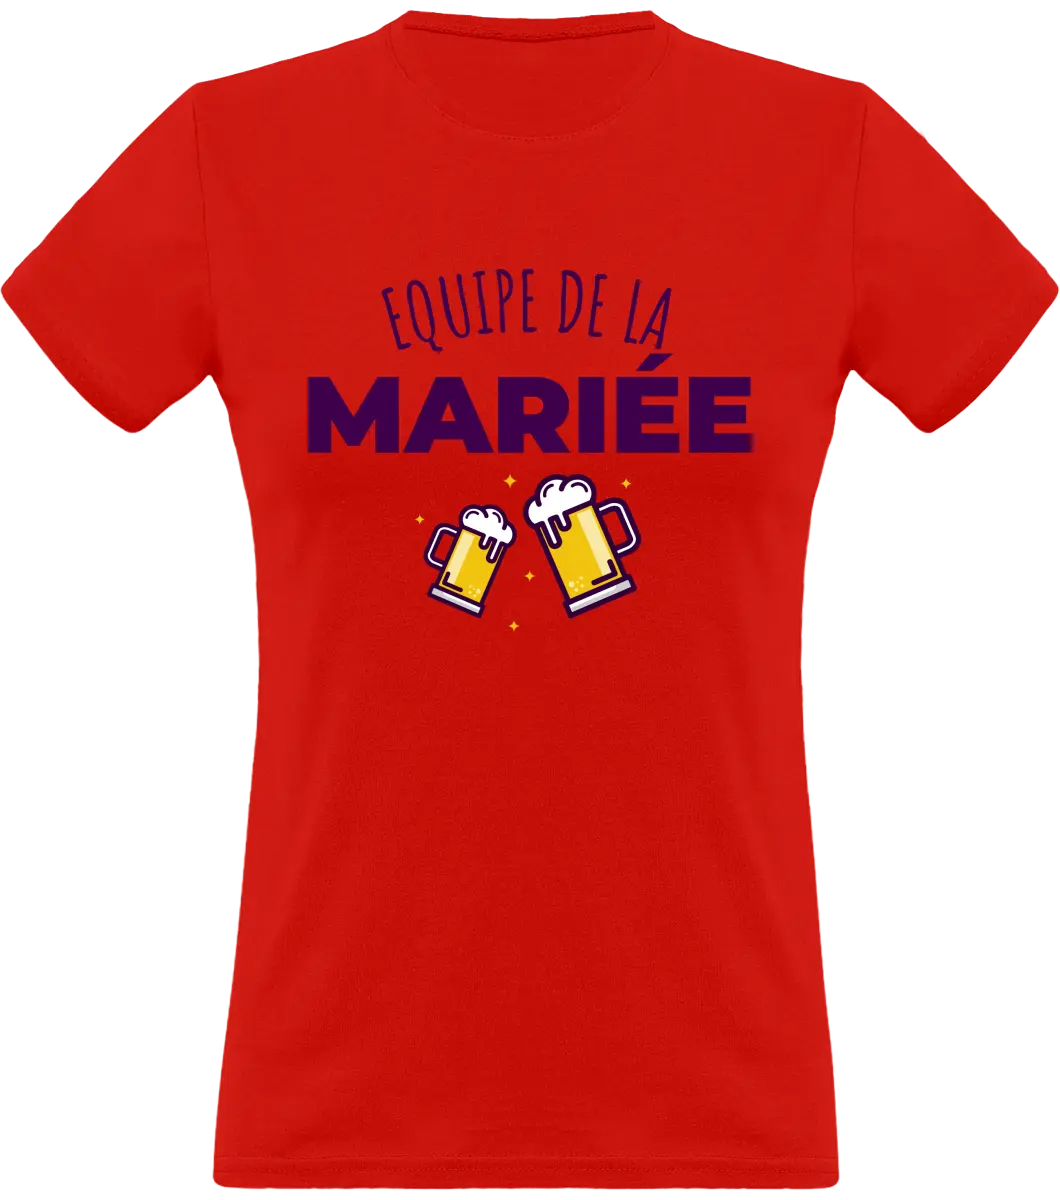 T-shirt EVJF "Équipe de la mariée" - French Humour